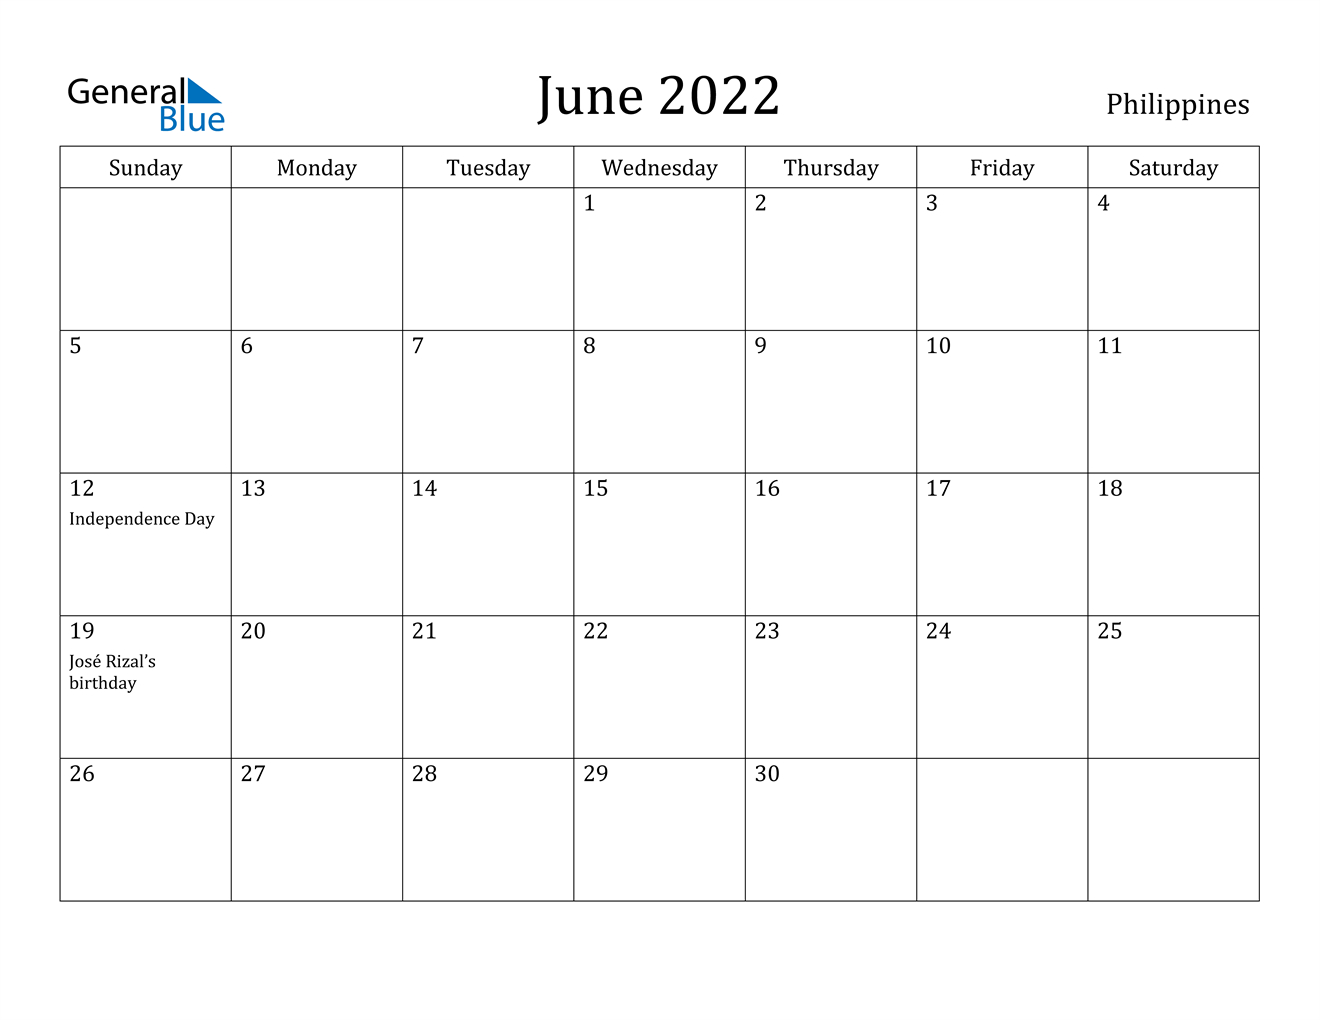 June 2022 Calendar - Philippines